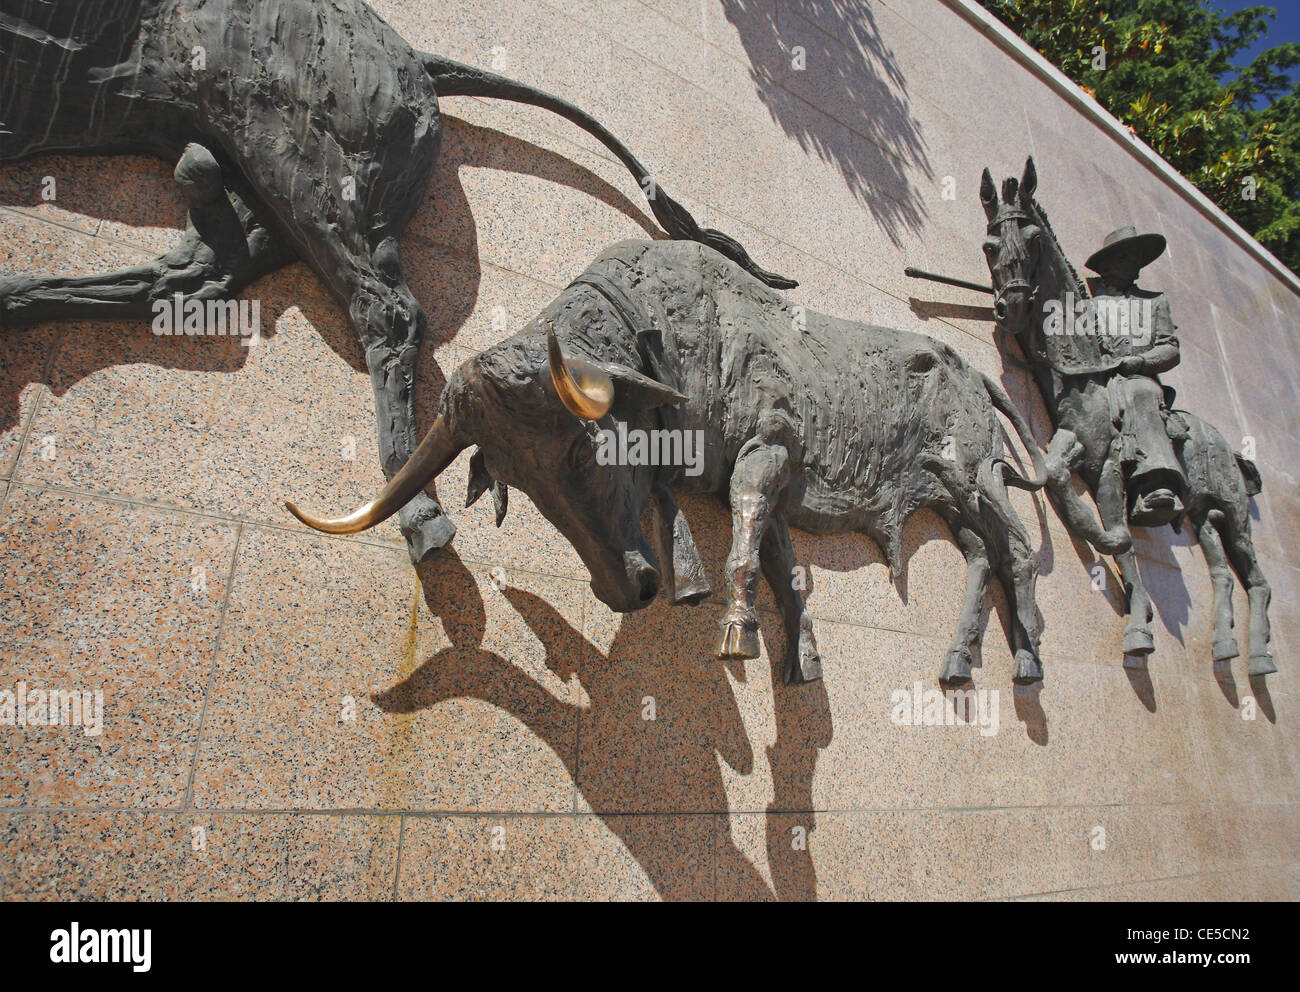 Wall statues at the Plaza de Toros de Las Ventas in Madrid, Spain Stock Photo